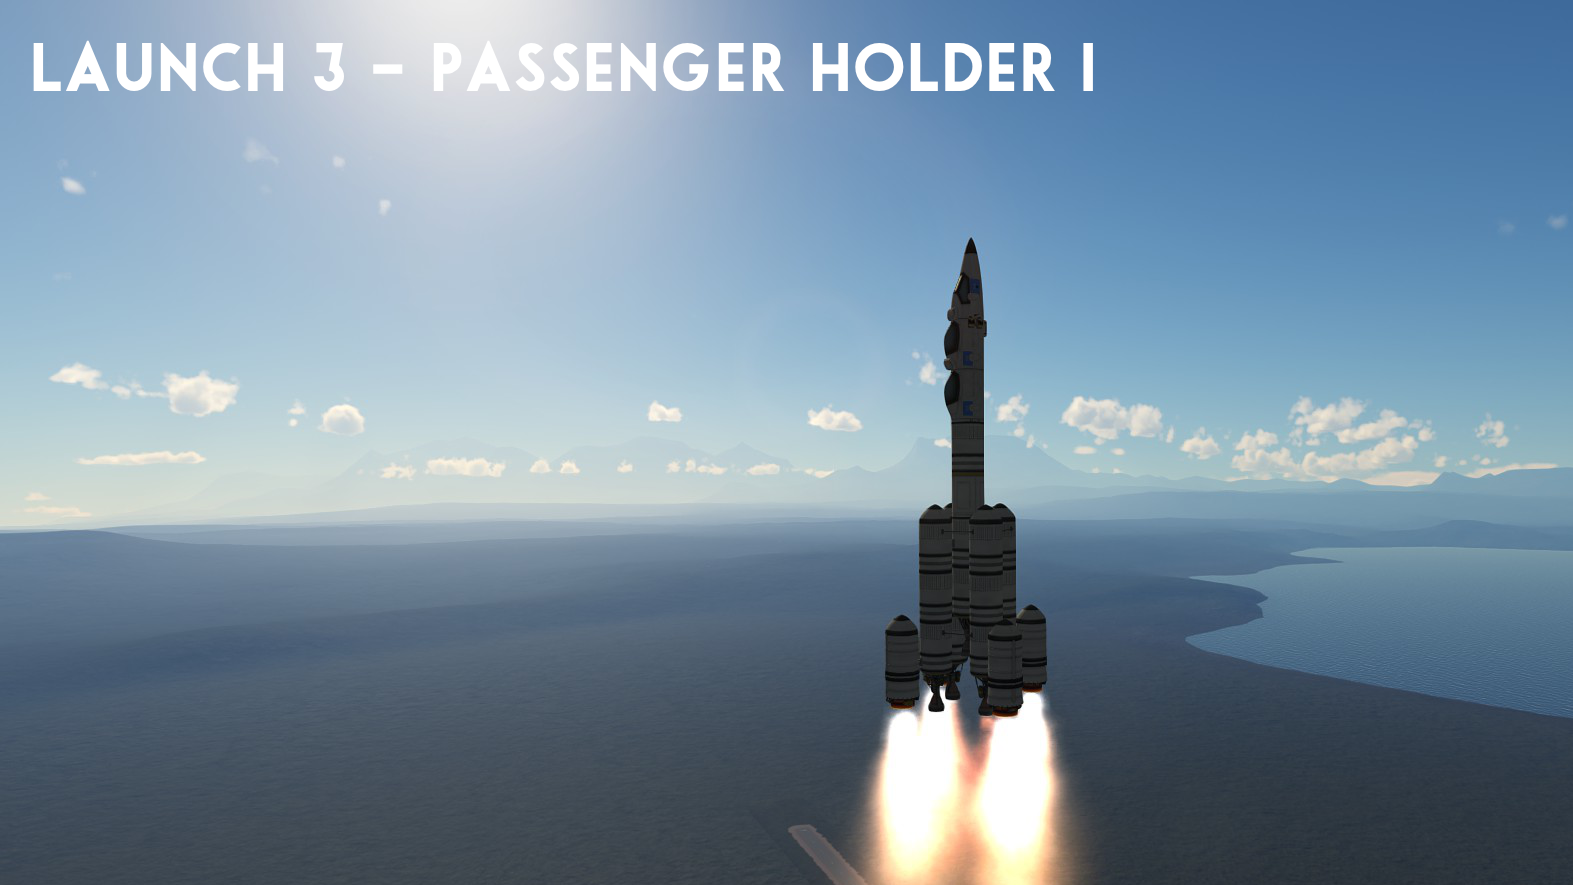 Launch 3 – Passenger Holder I